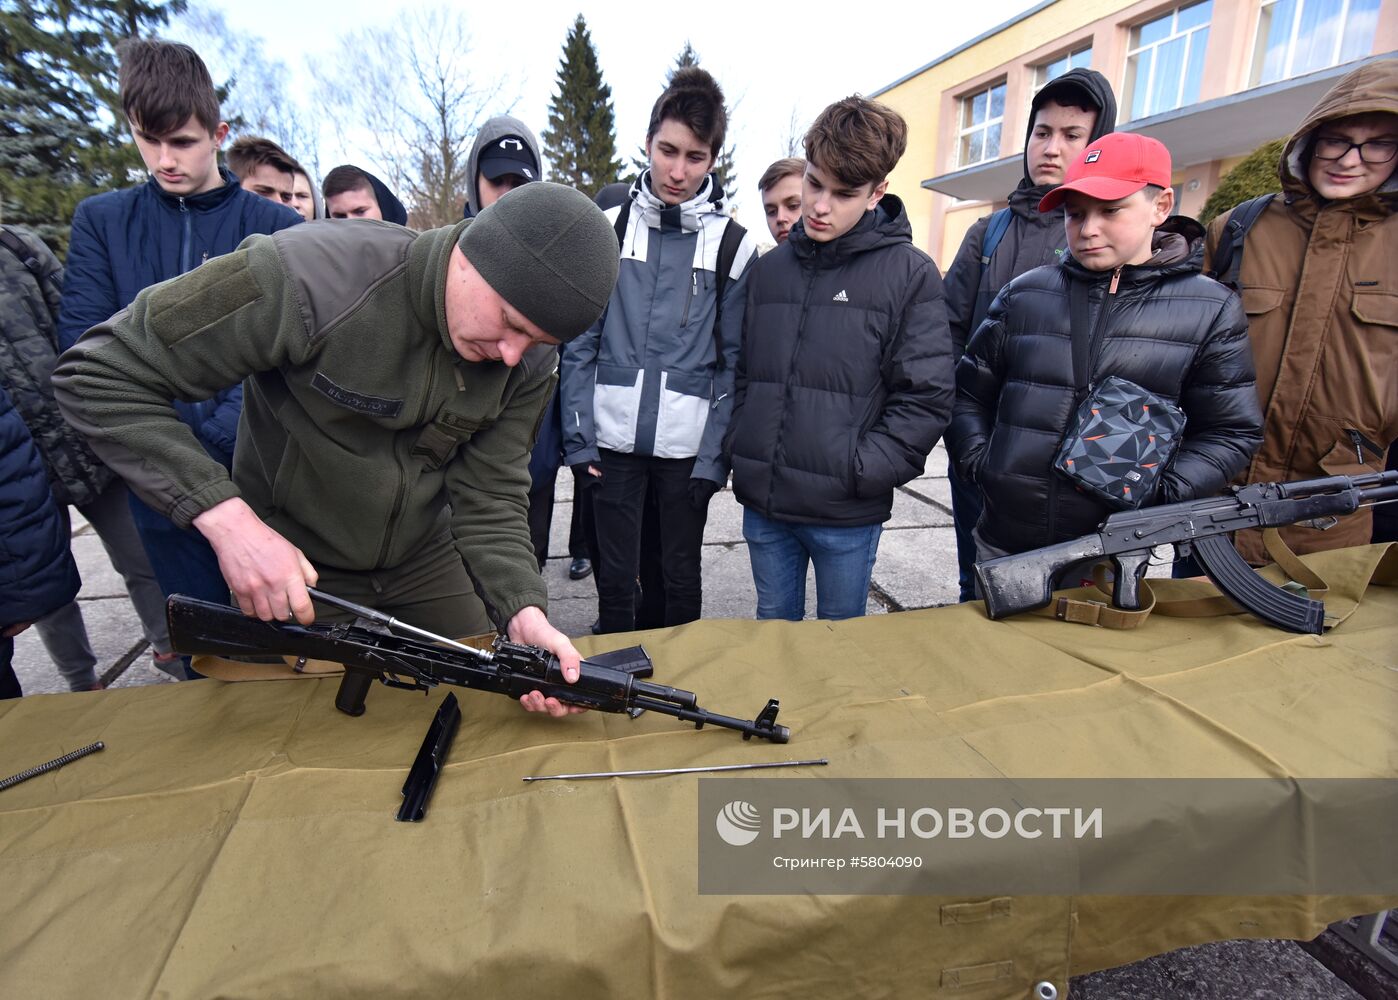 День открытых дверей в подразделении Нацгвардии Украины во Львове